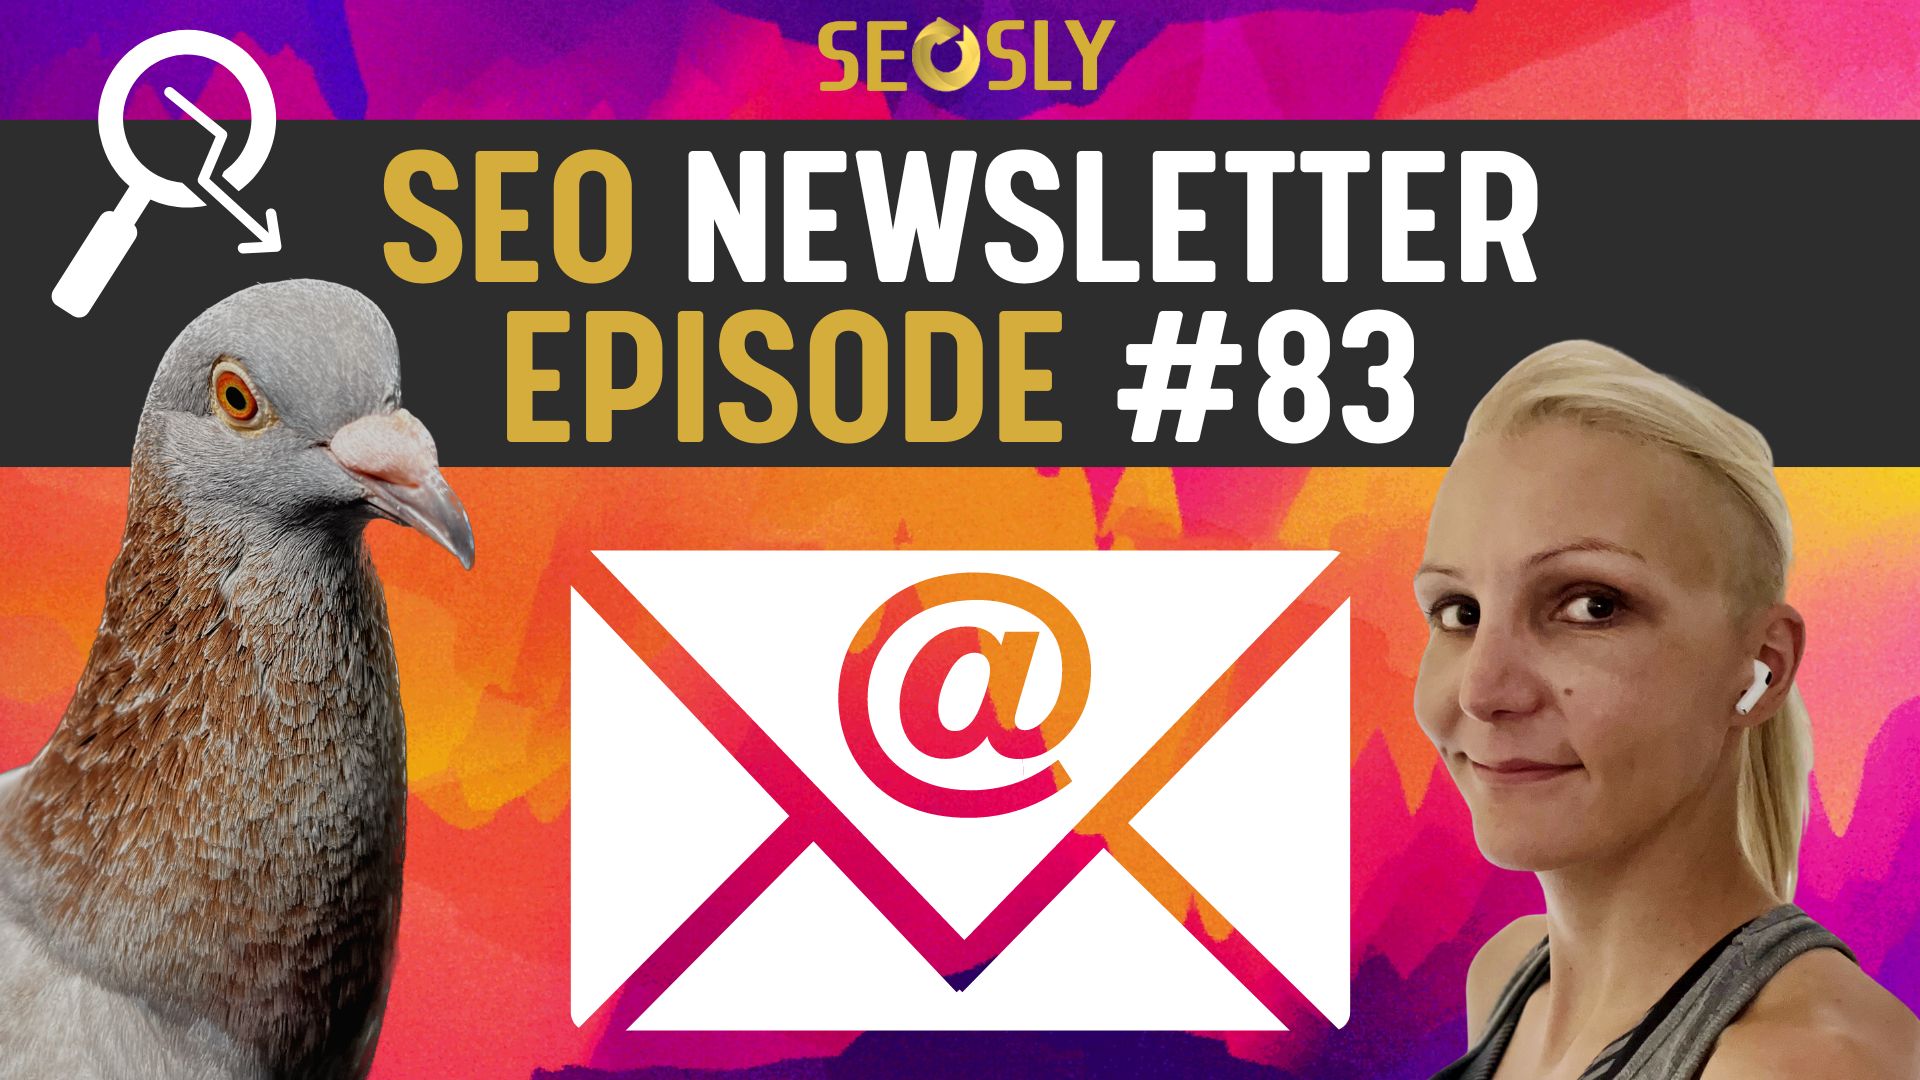 SEO Newsletter #83: *** & Fresh SEO News From Olga Zarr – SEOSLY